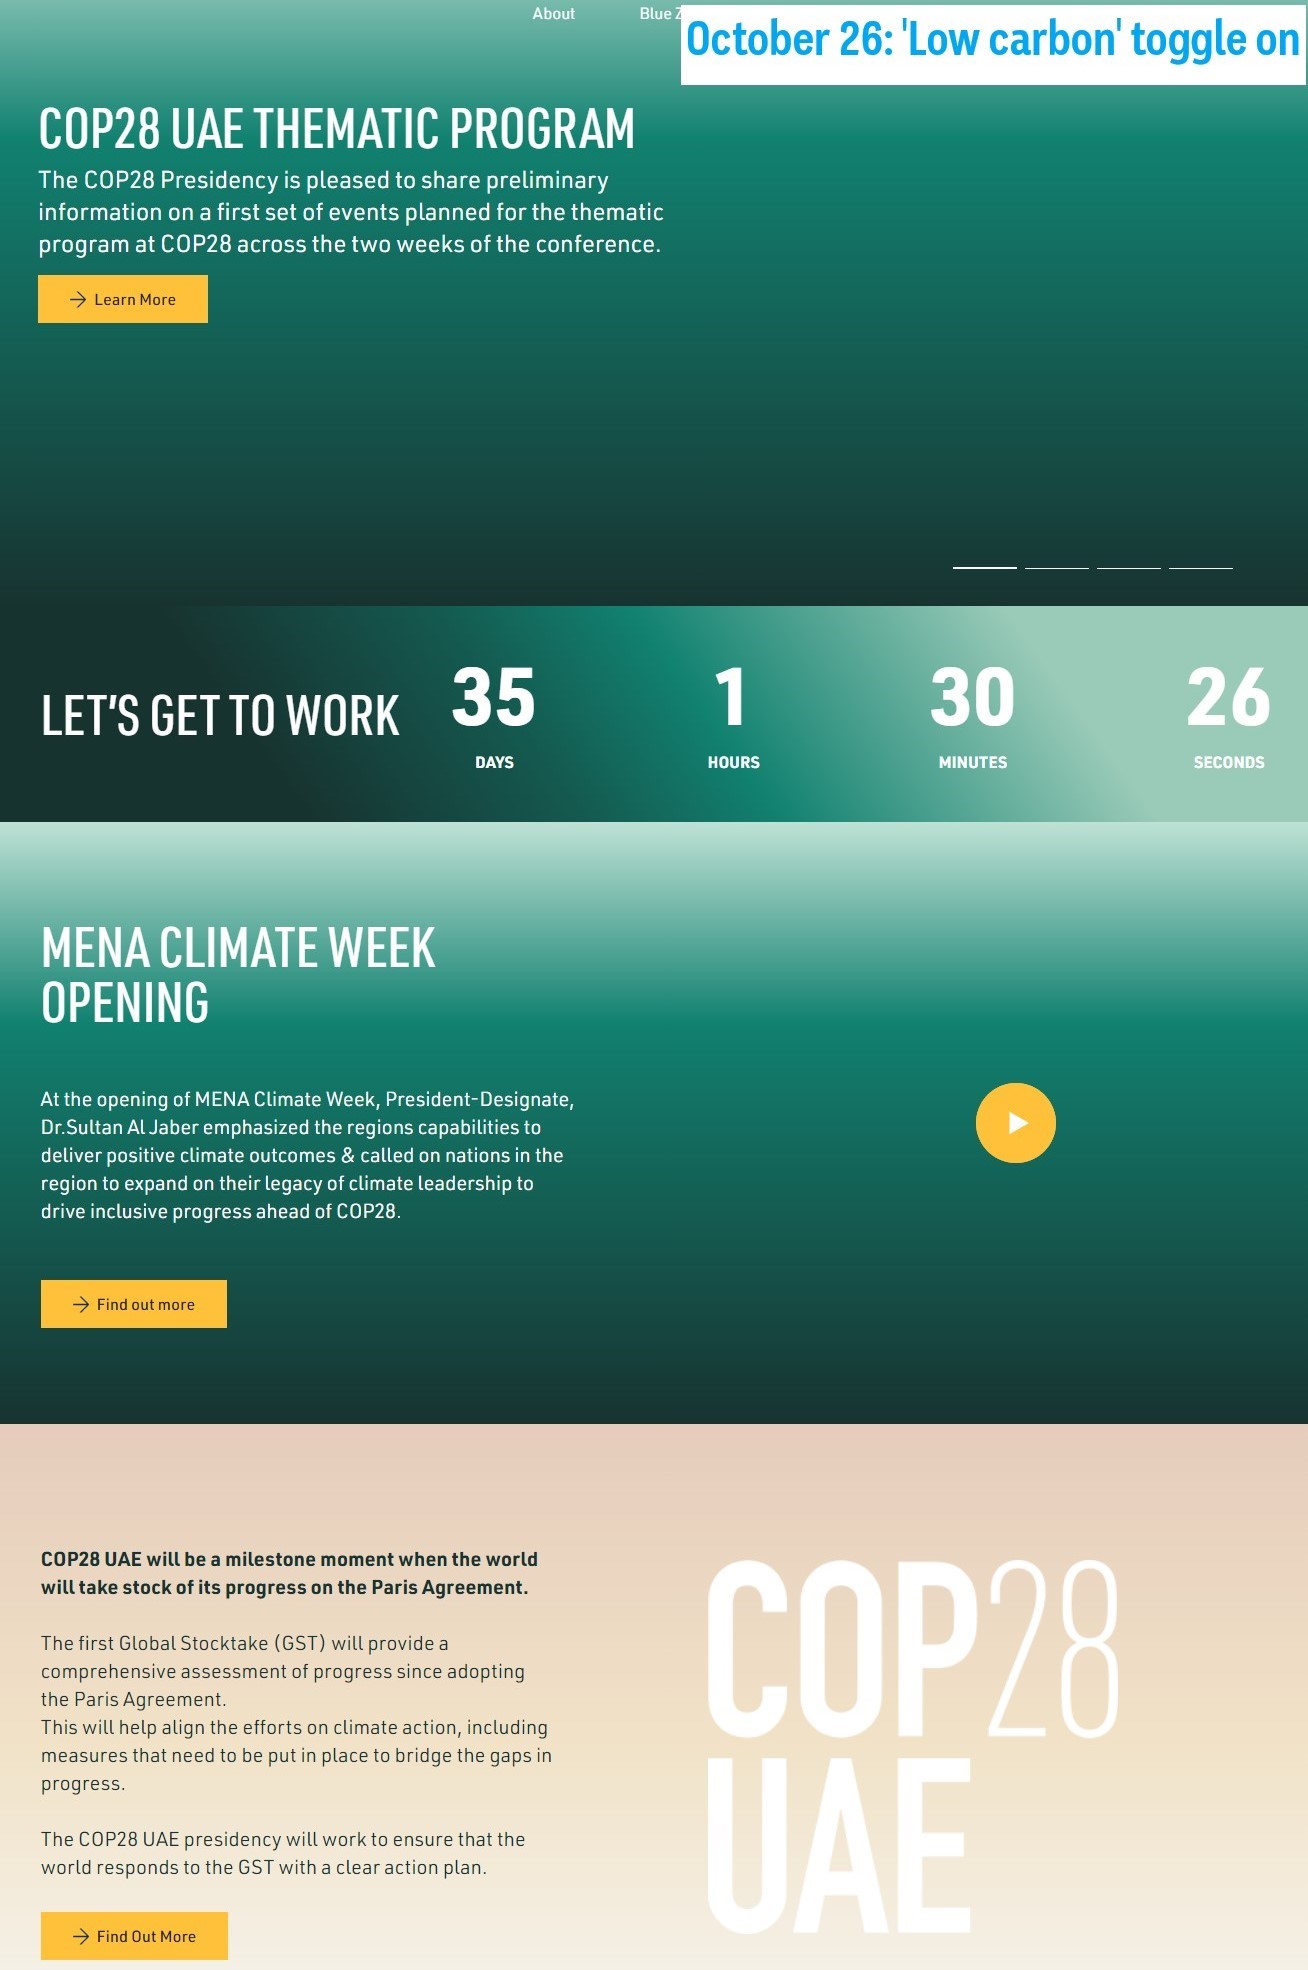 COP28 website on October 26, 2023.